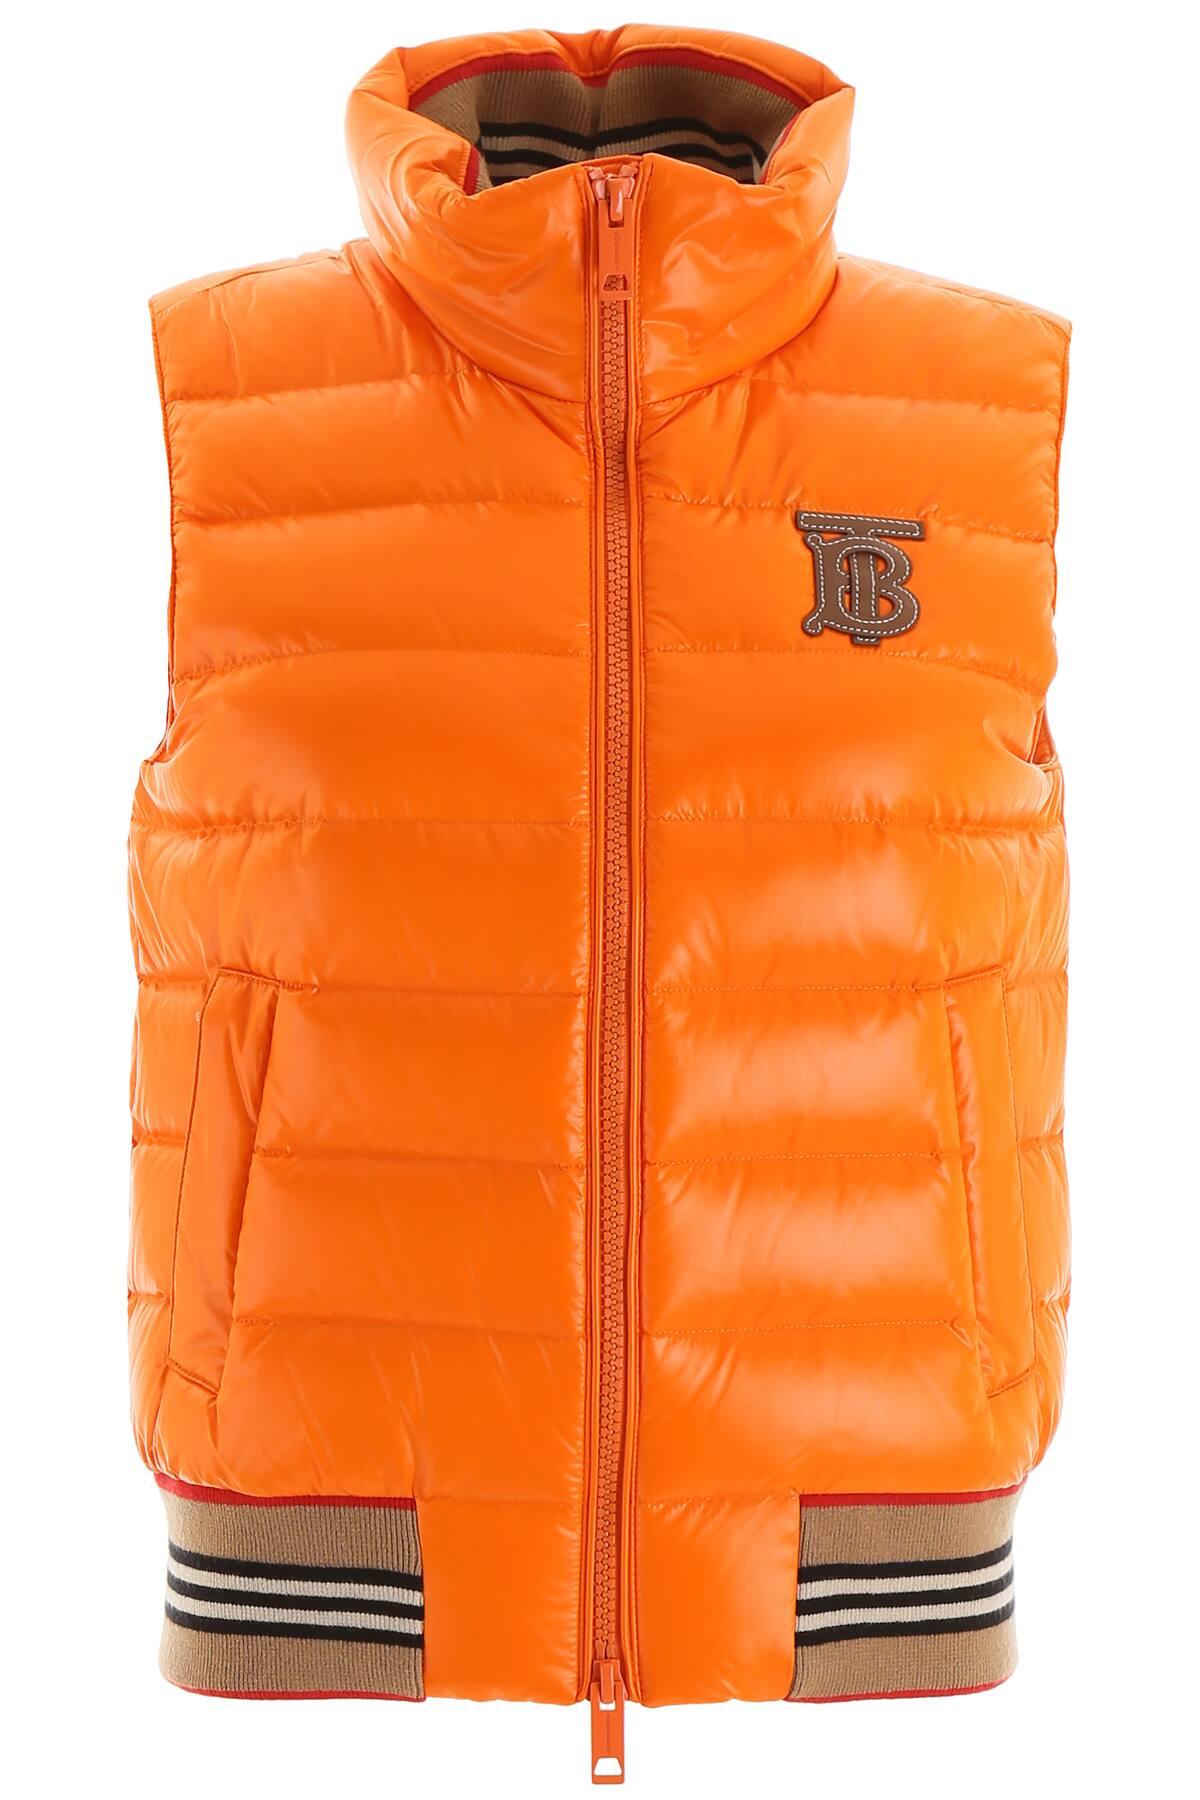 Actualizar 45+ imagen burberry orange vest